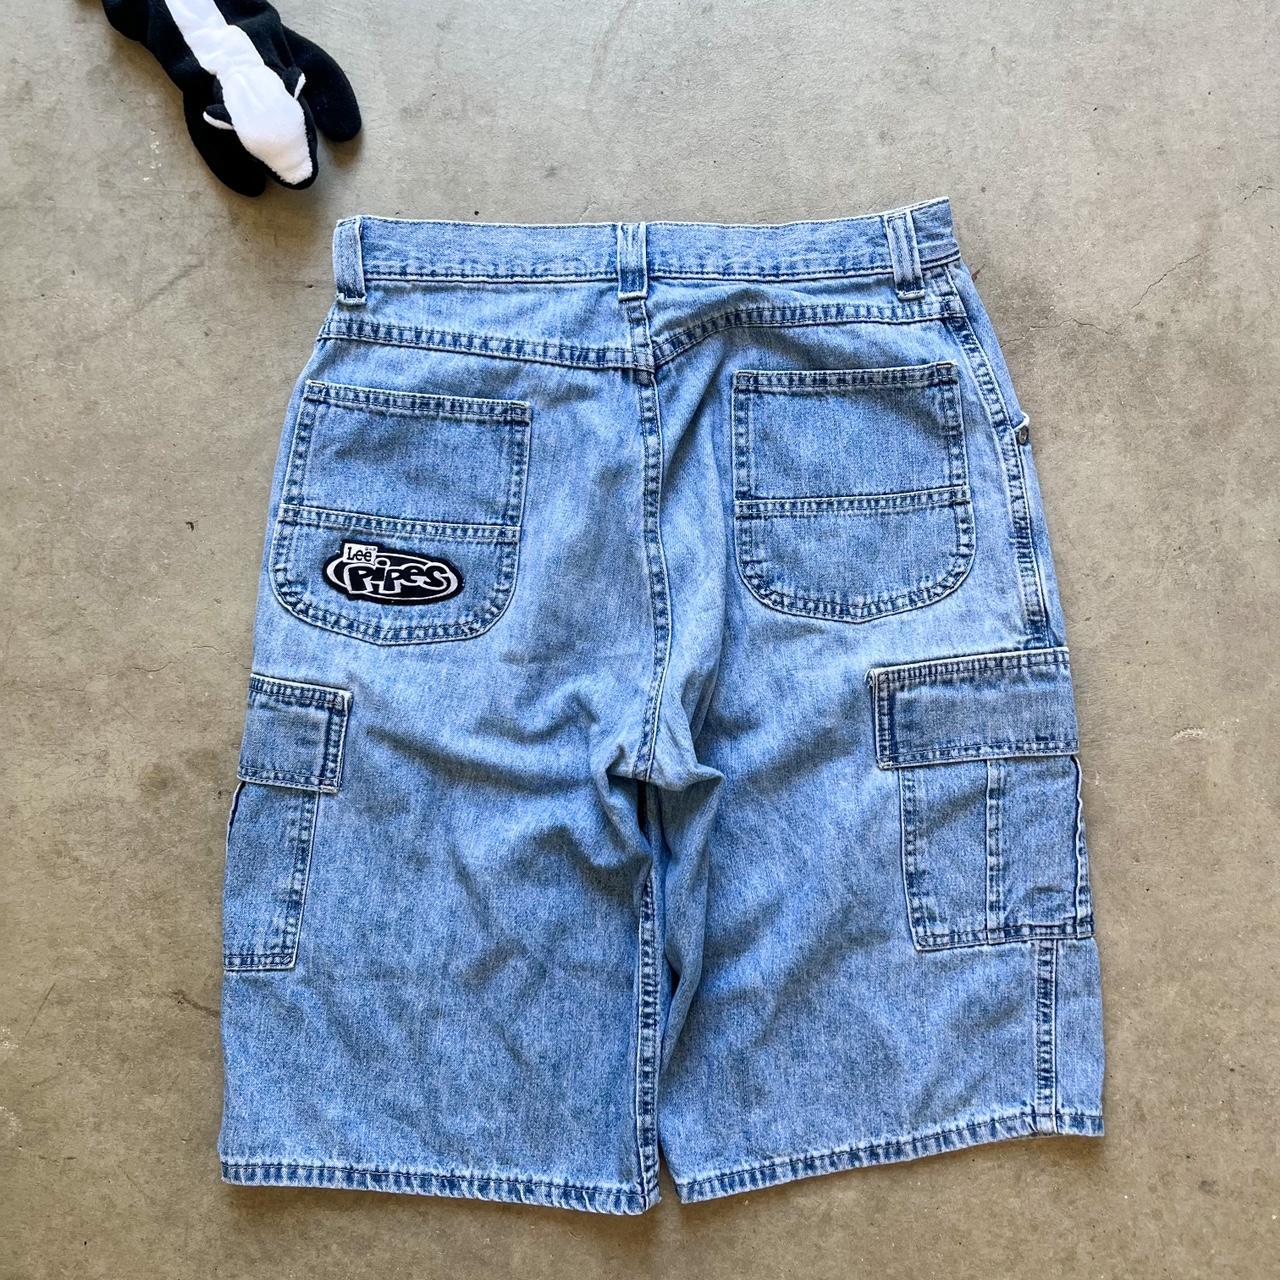 Vintage 90s Lee Pipes denim cargo shorts— Super sick... - Depop